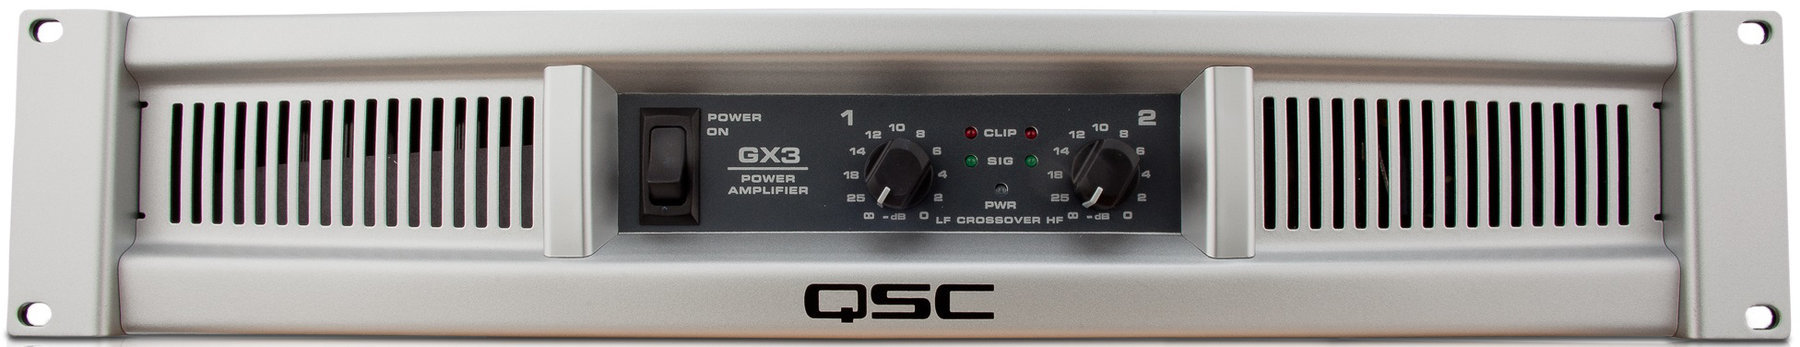 Výkonový koncový zosilňovač QSC GX3 Výkonový koncový zosilňovač